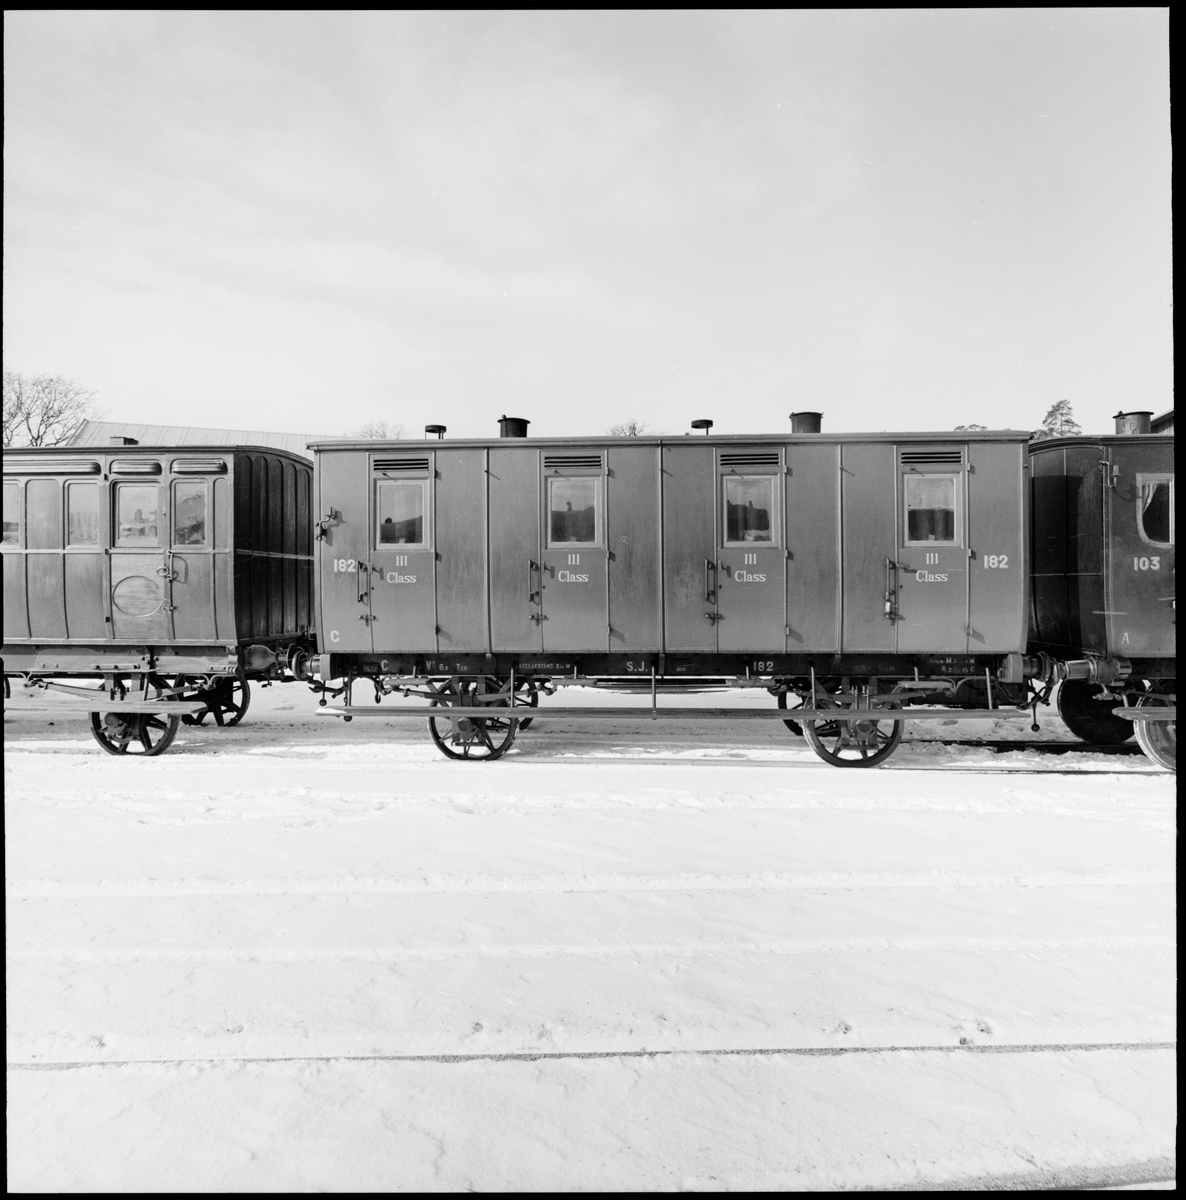 Tredjeklass personvagn, sittvagn, SJ C nr 182 av Statens Järnvägars andra typ. Vagnskorg av trä målad i rödbrun kulör med gul märkning. 
En helt öppen avdelning med soffor uppställda motstående varandra på kupévis, var och en avsedd för fem resande. Varje soffpar har en egen ingång från sidan. Bagagehyllor av trä med järnkonsoler tillkomna efter 1872.
Vagnen uppvisar en karaktär som är mycket nära original. Buffertar, koppel, draginrättning och lagerboxar av 1874 års modell. Vagnen försågs med ett tunt lackskikt på 1950-talet, och märkningen gjordes om i originalutförande. Invändigt har sofforna sannolikt målats om, varför tonen är något mörk.